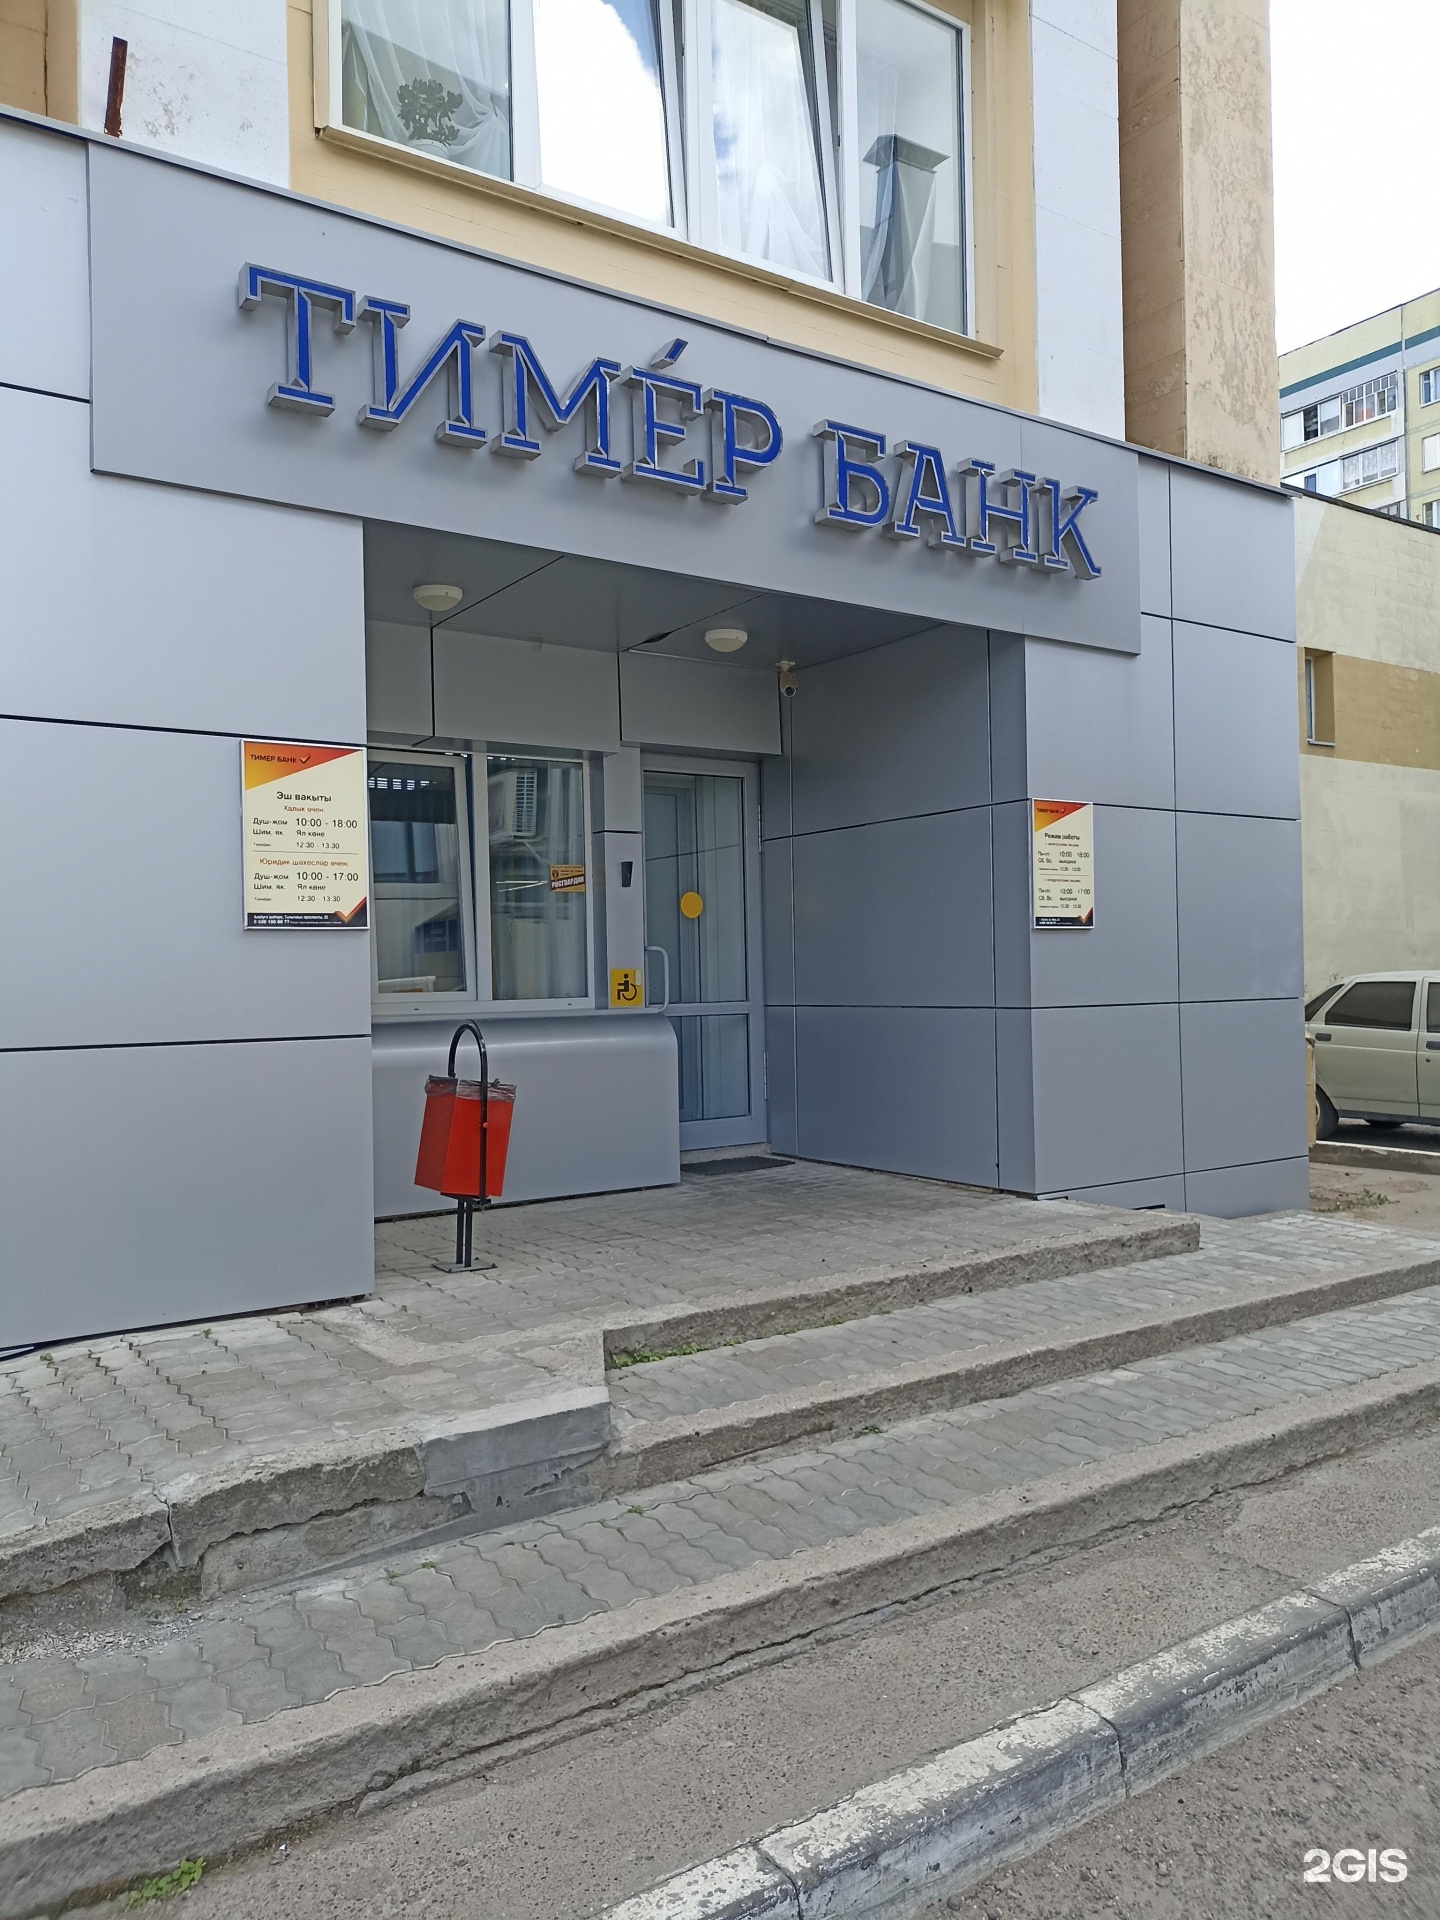 Сайт тимер банка. Тимер банк. Тимер банк Нижнекамск. Тимер банк Зеленодольск. Тимер банк фото.